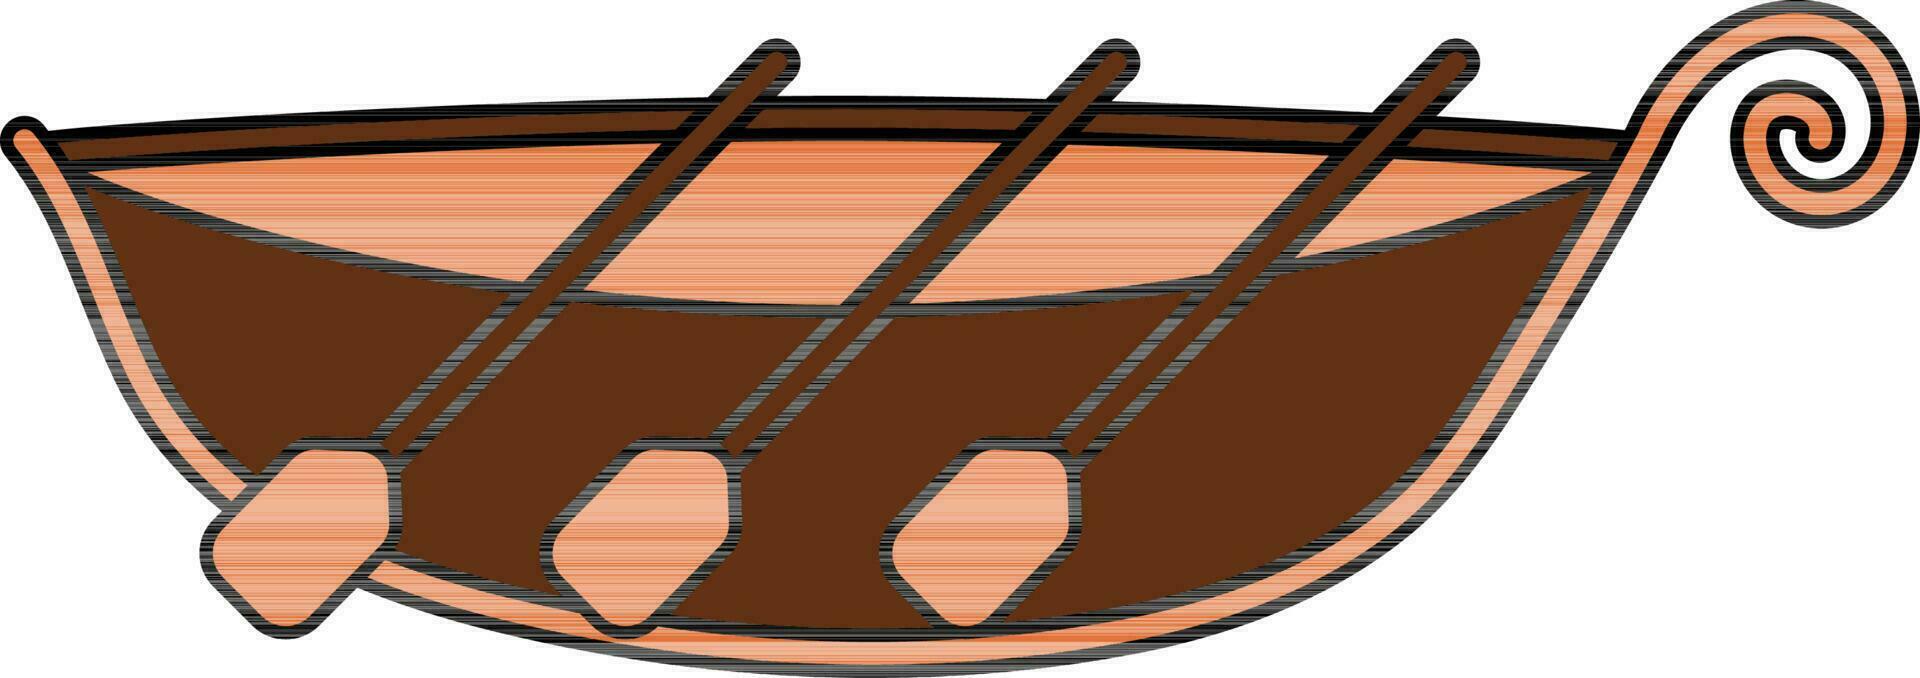 Rowing Or Gondola Boat Icon In Brown And Orange Color. vector